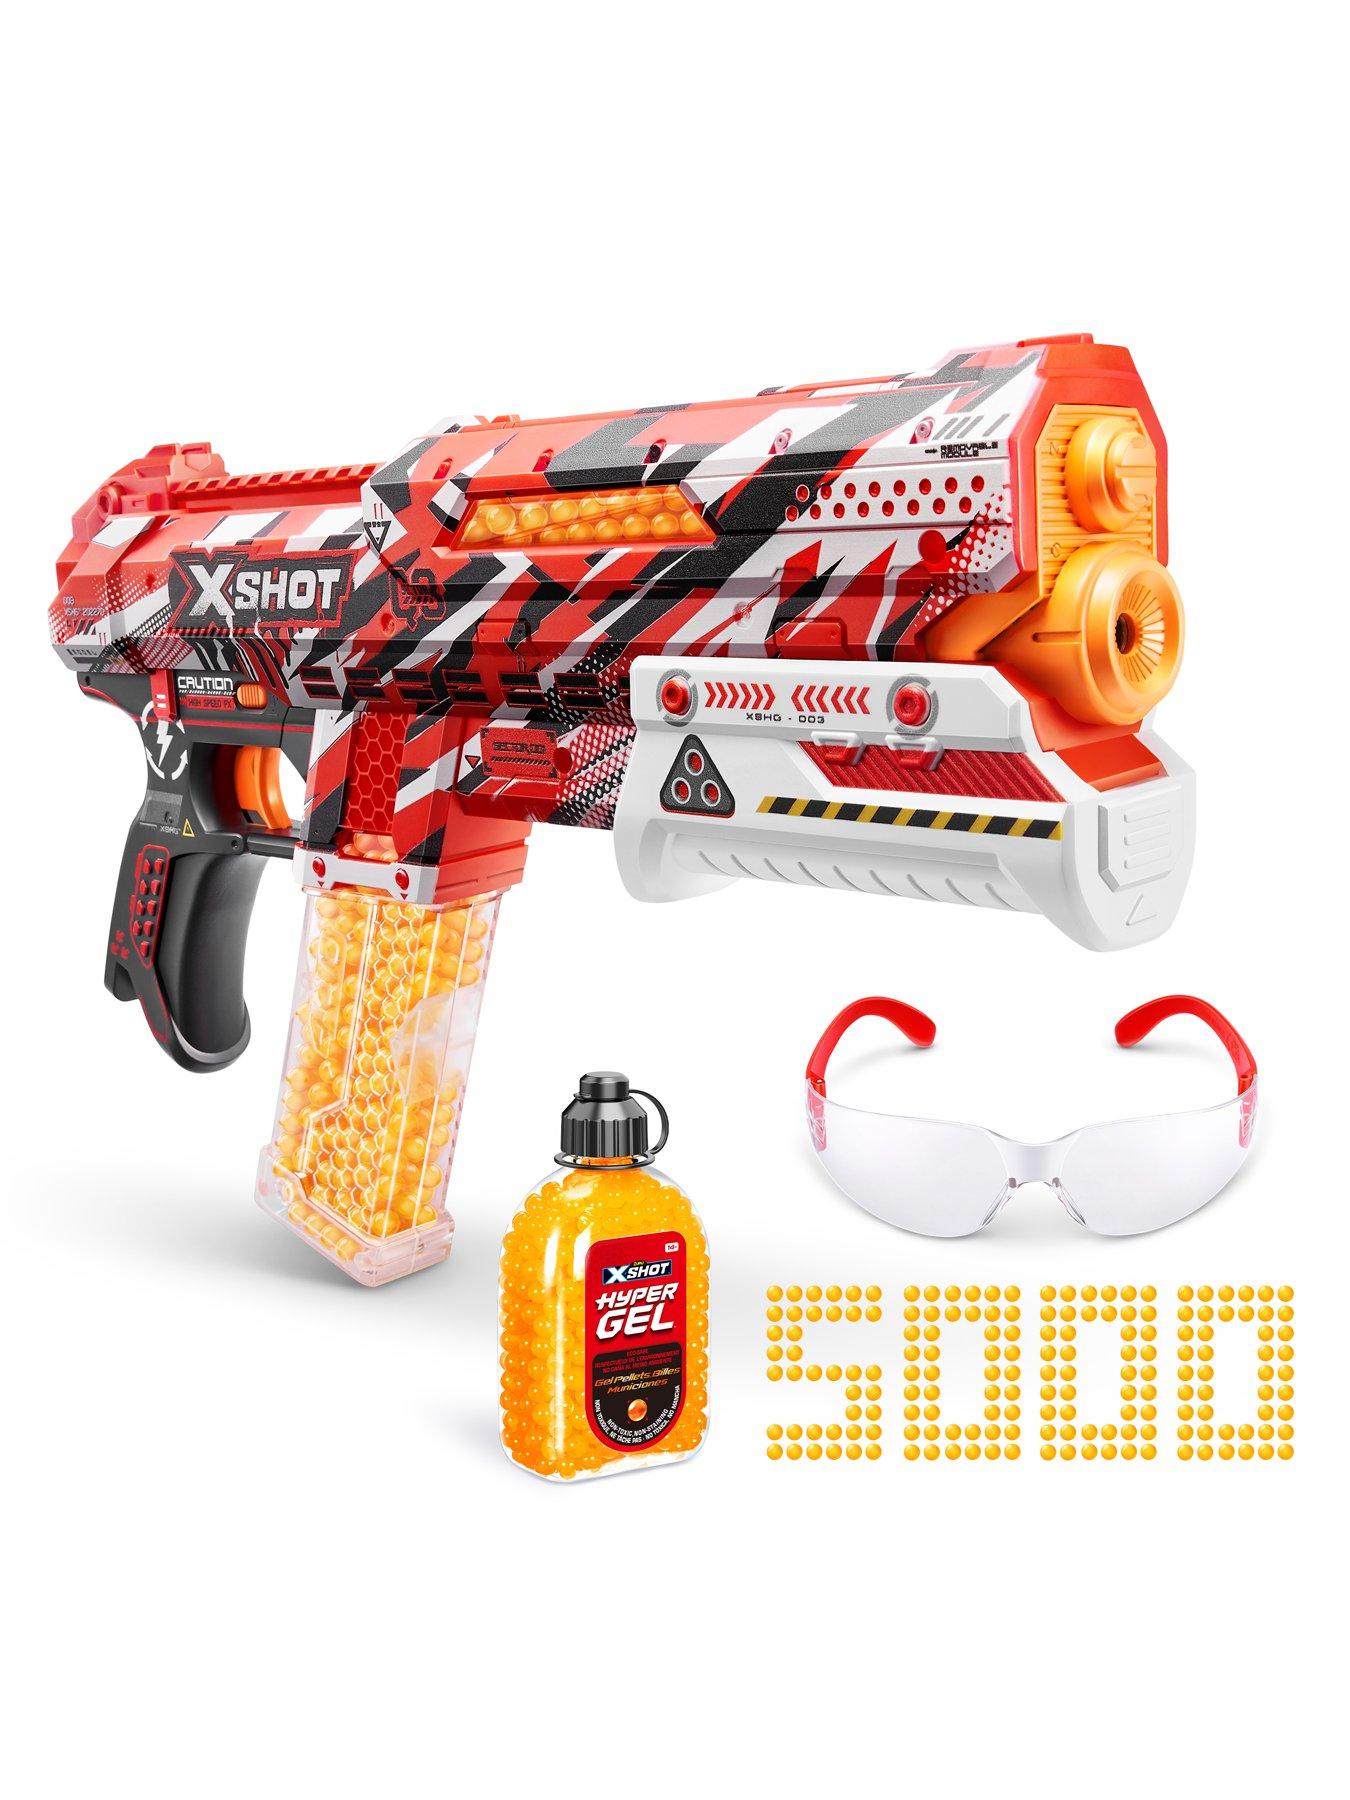 Excel X-shot Turbo Fire Ammunition Gun, Children's Toy Gun, 35